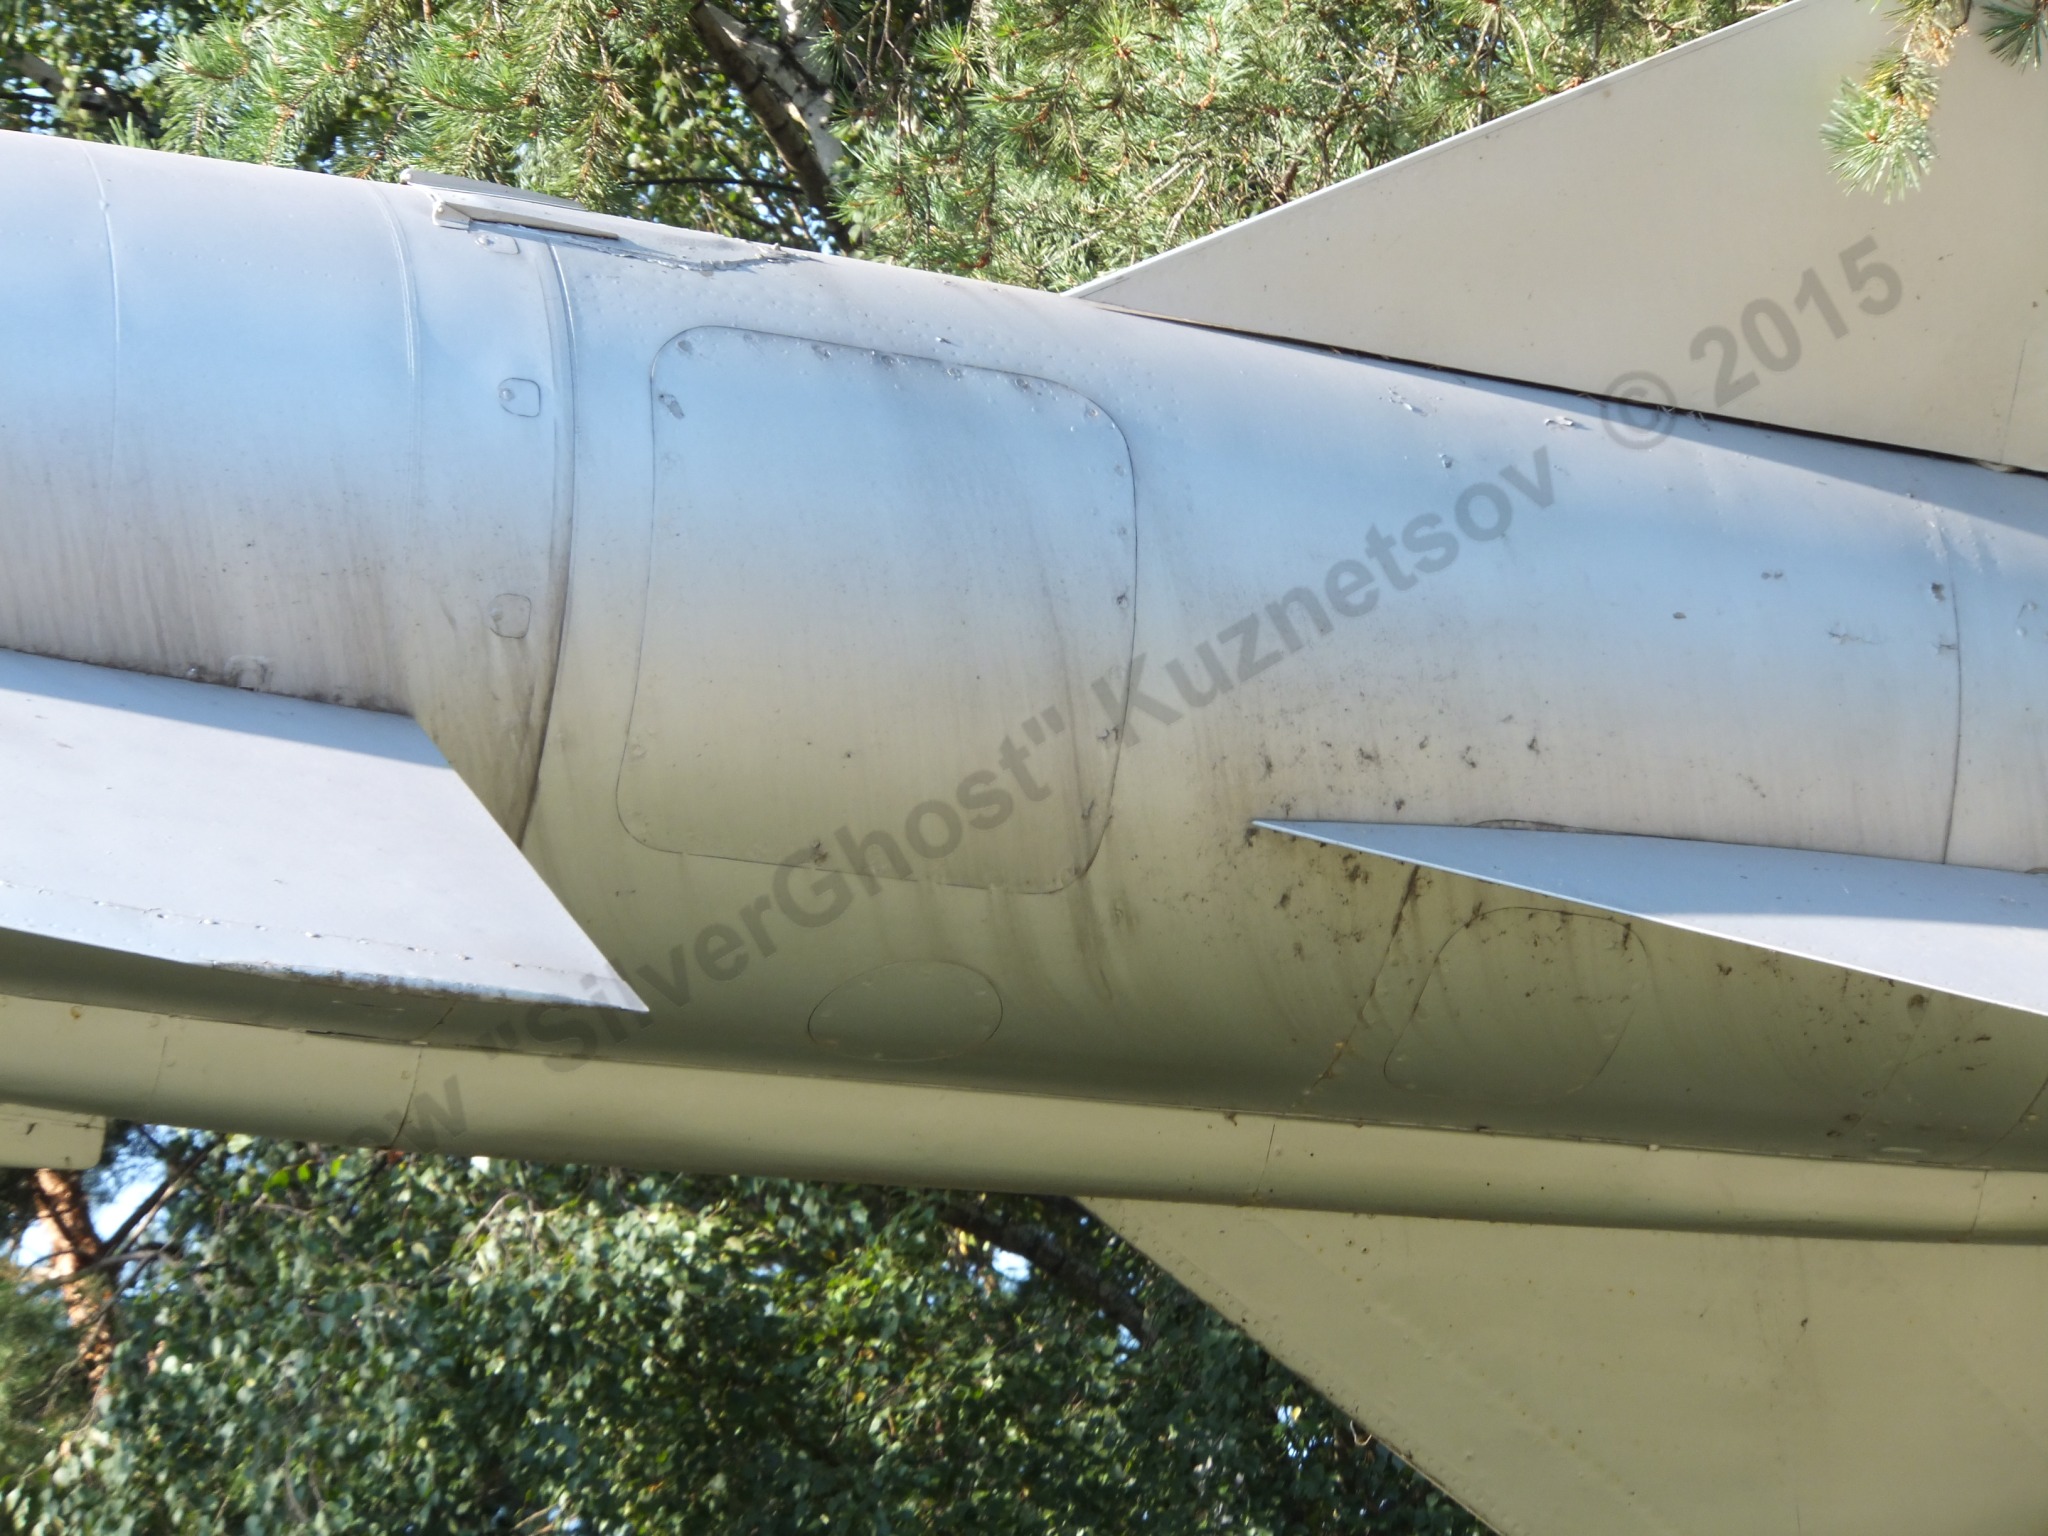 Kh-22 missile_0007.jpg